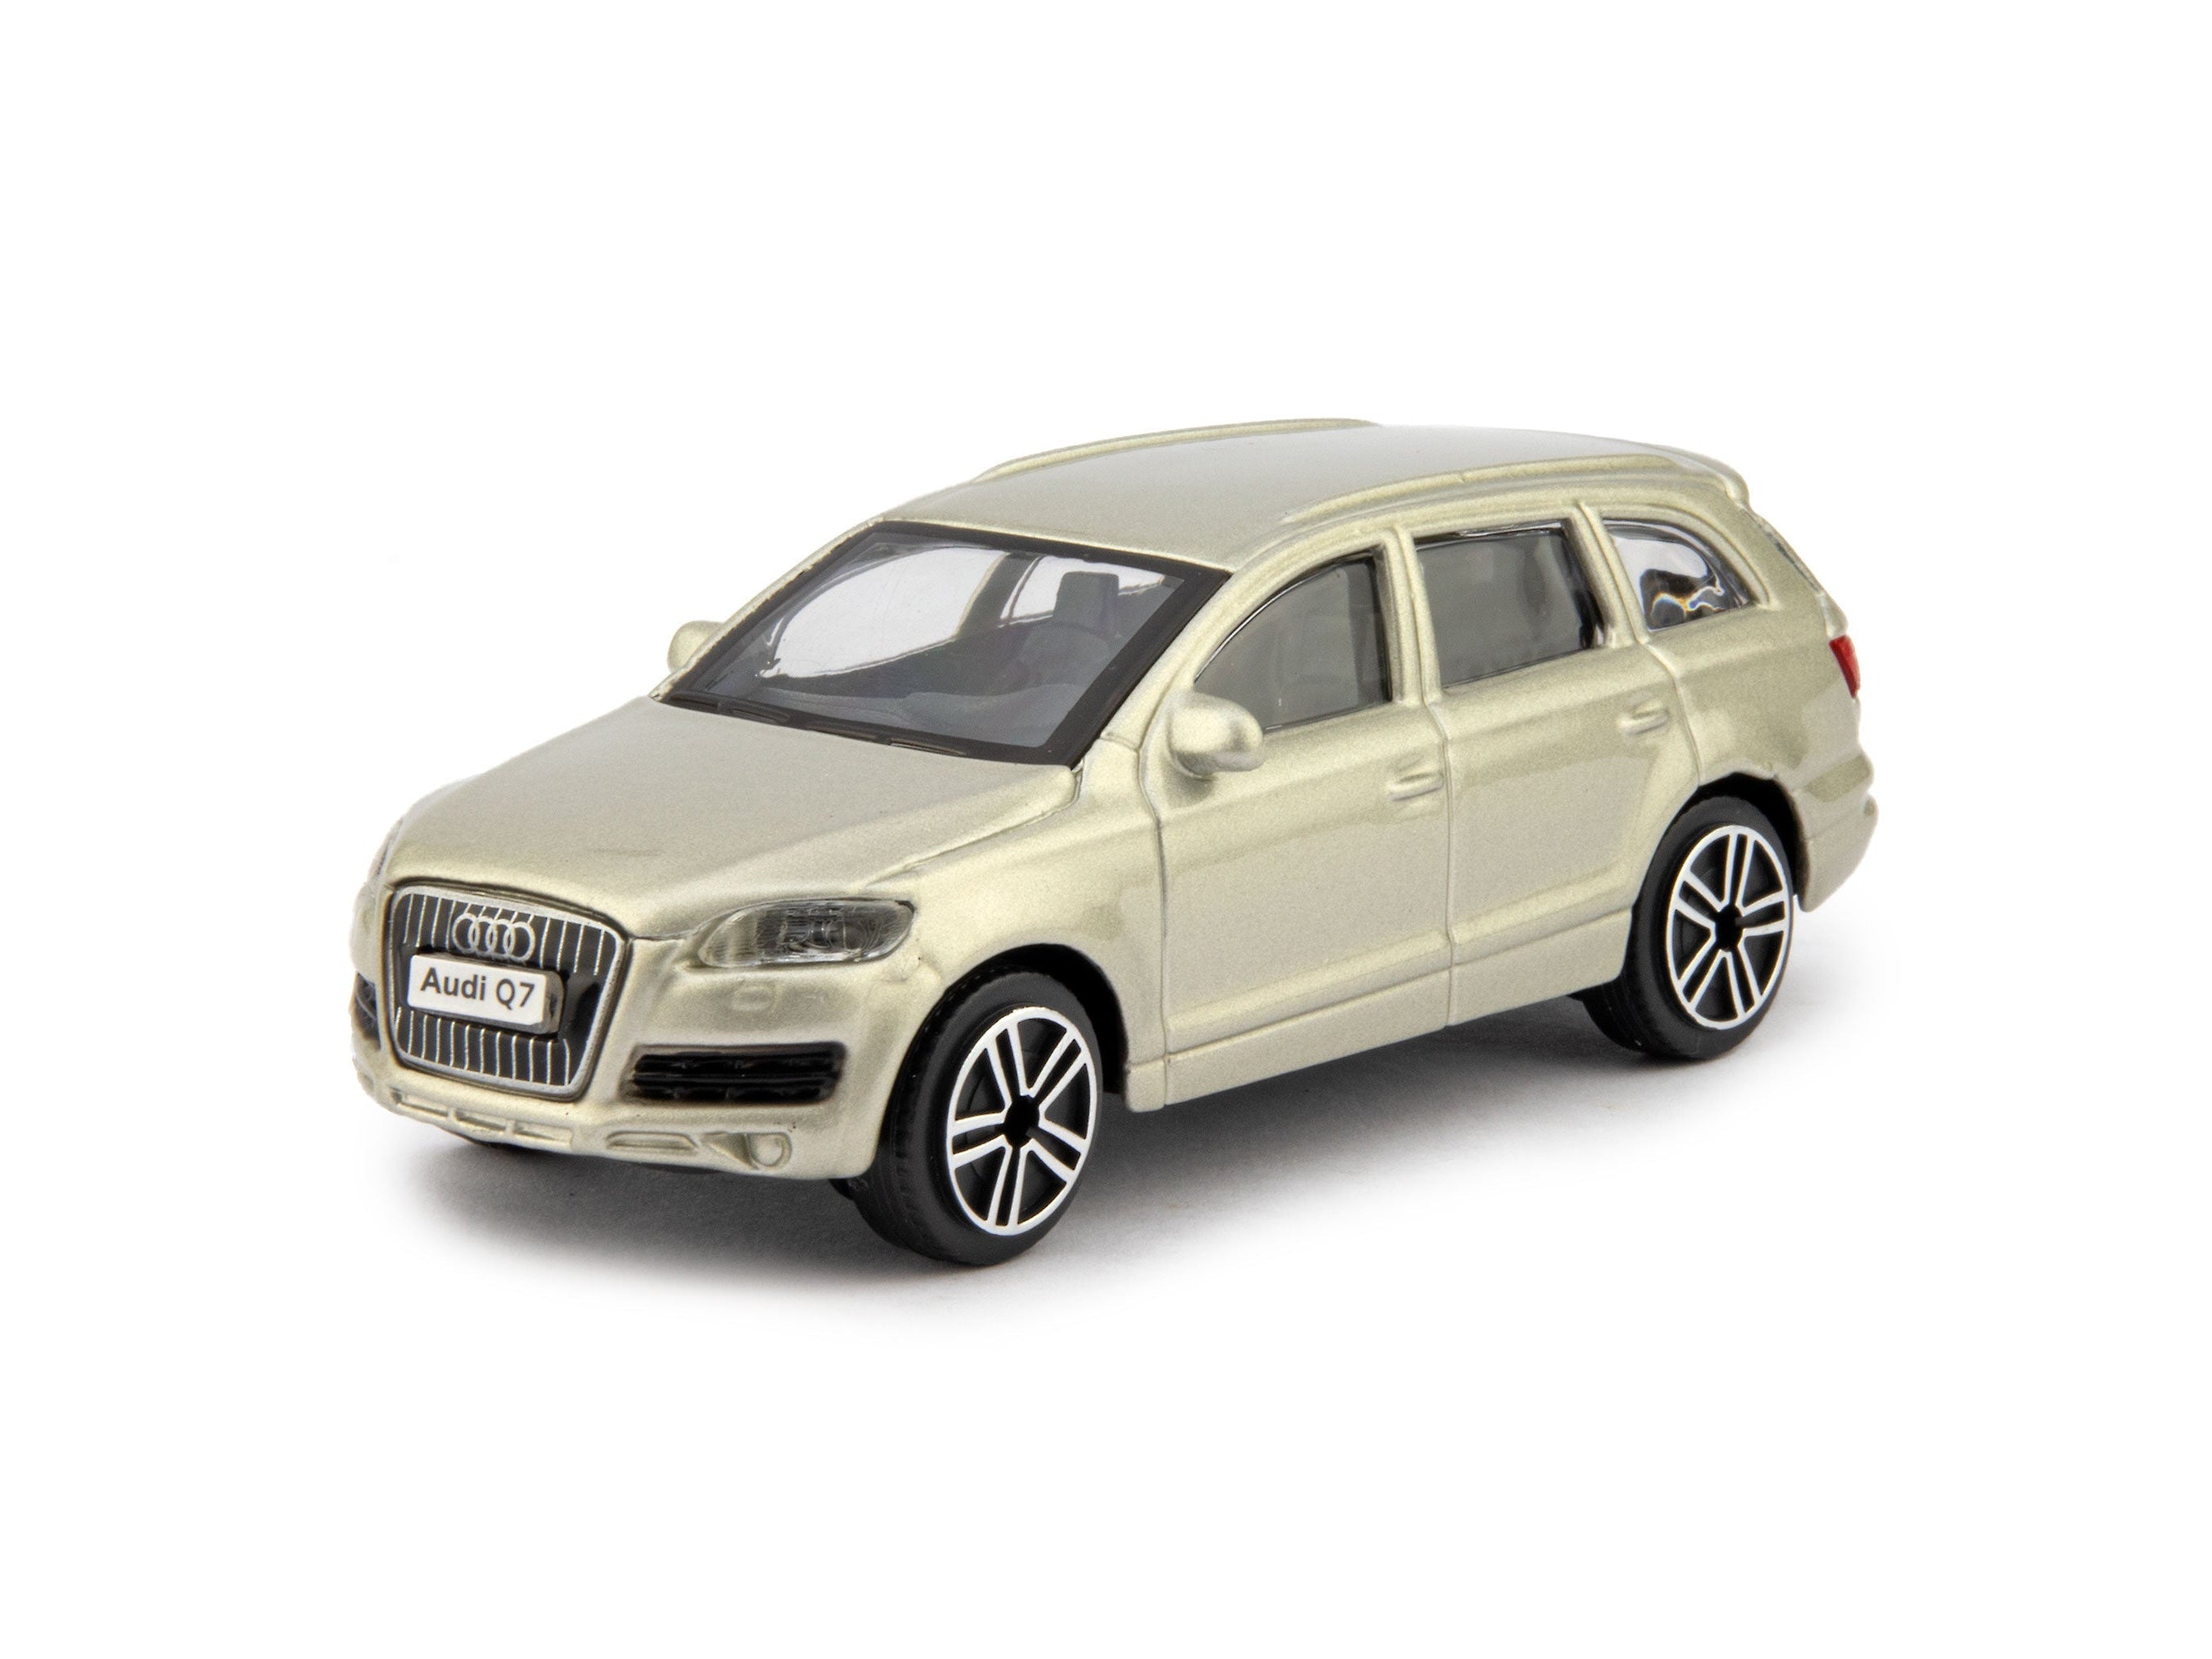 Audi Q7 2011 gold - 1:43 Scale Diecast Toy Car-Bburago-Diecast Model Centre